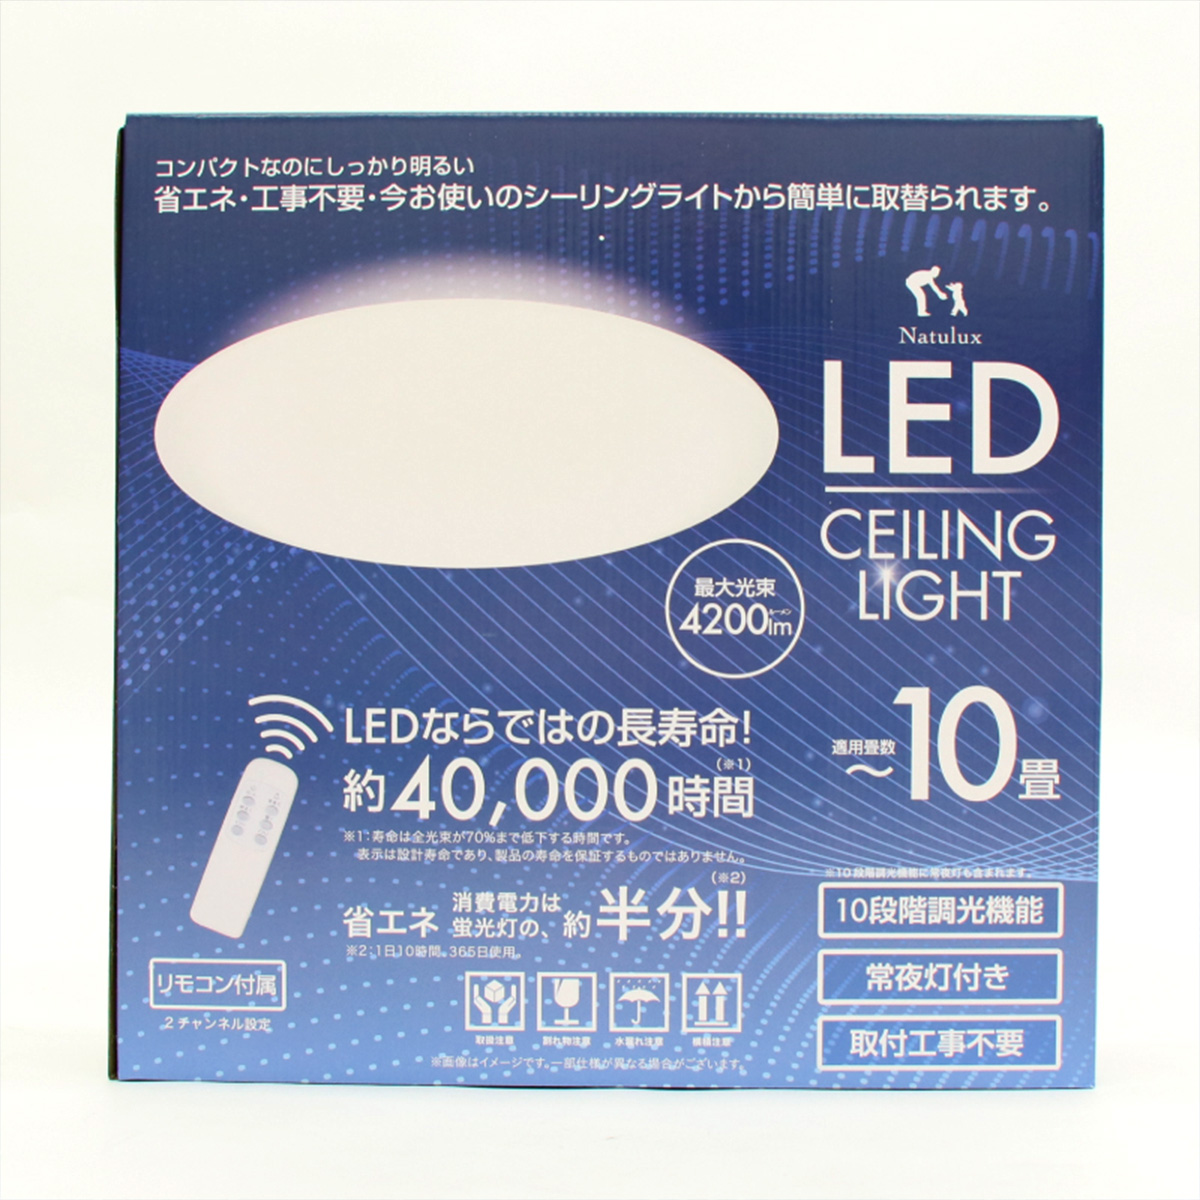 LEDシーリングライト 10畳用 10段階調光